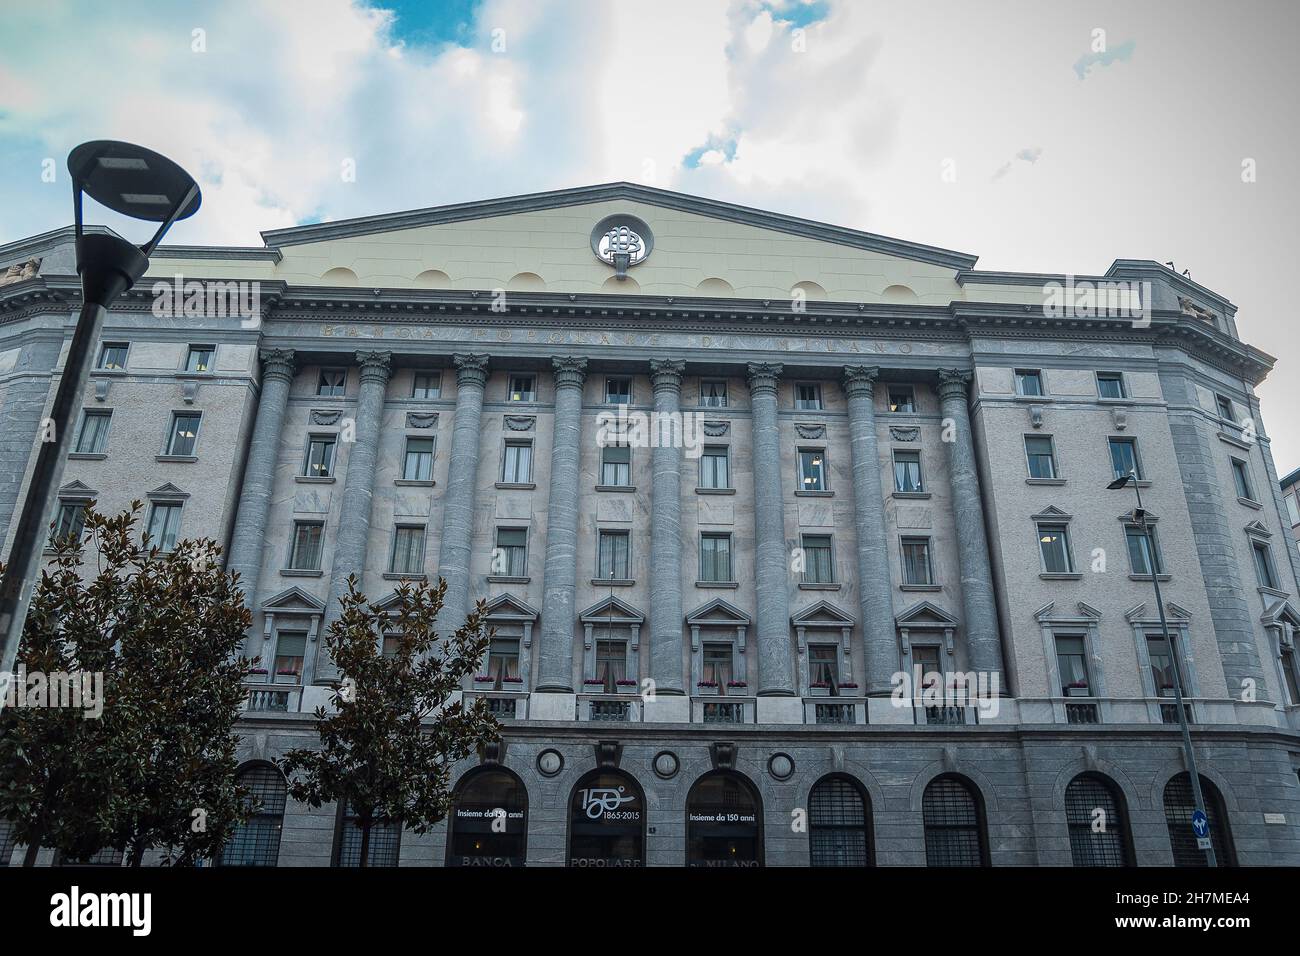 Palazzo della Banca popolare di Milano Foto stock - Alamy